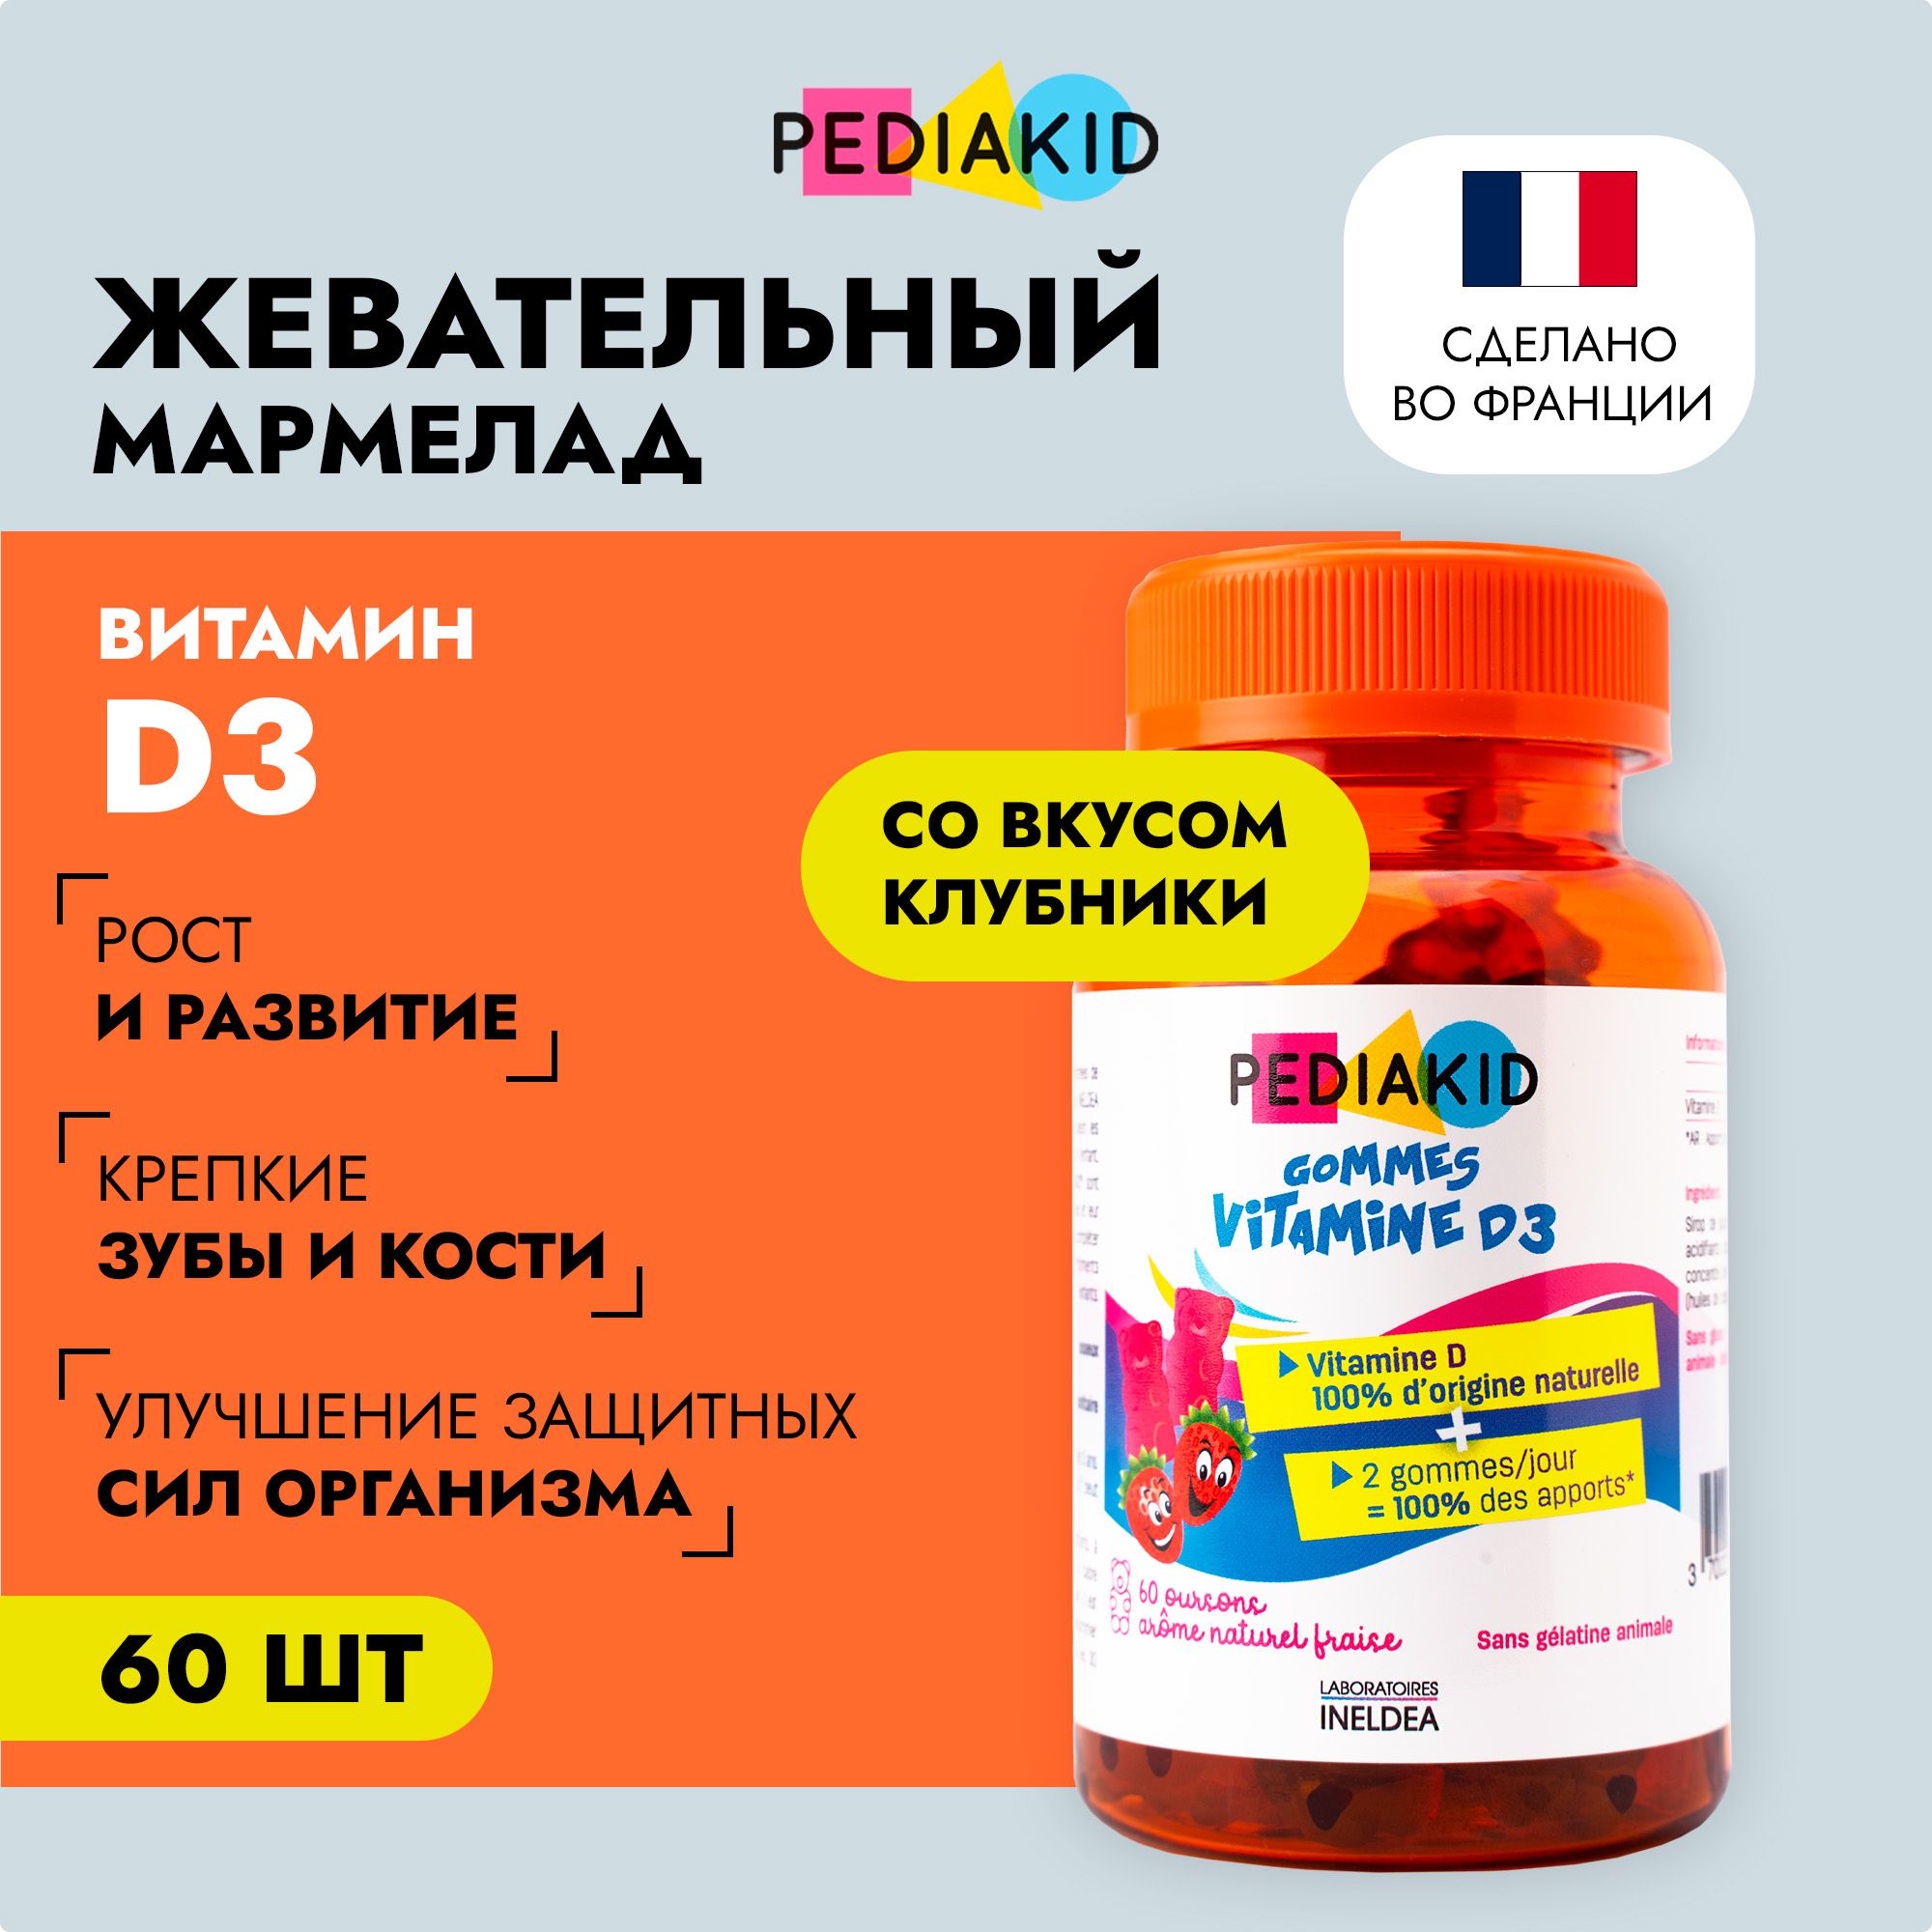 Педиакид витамин д3